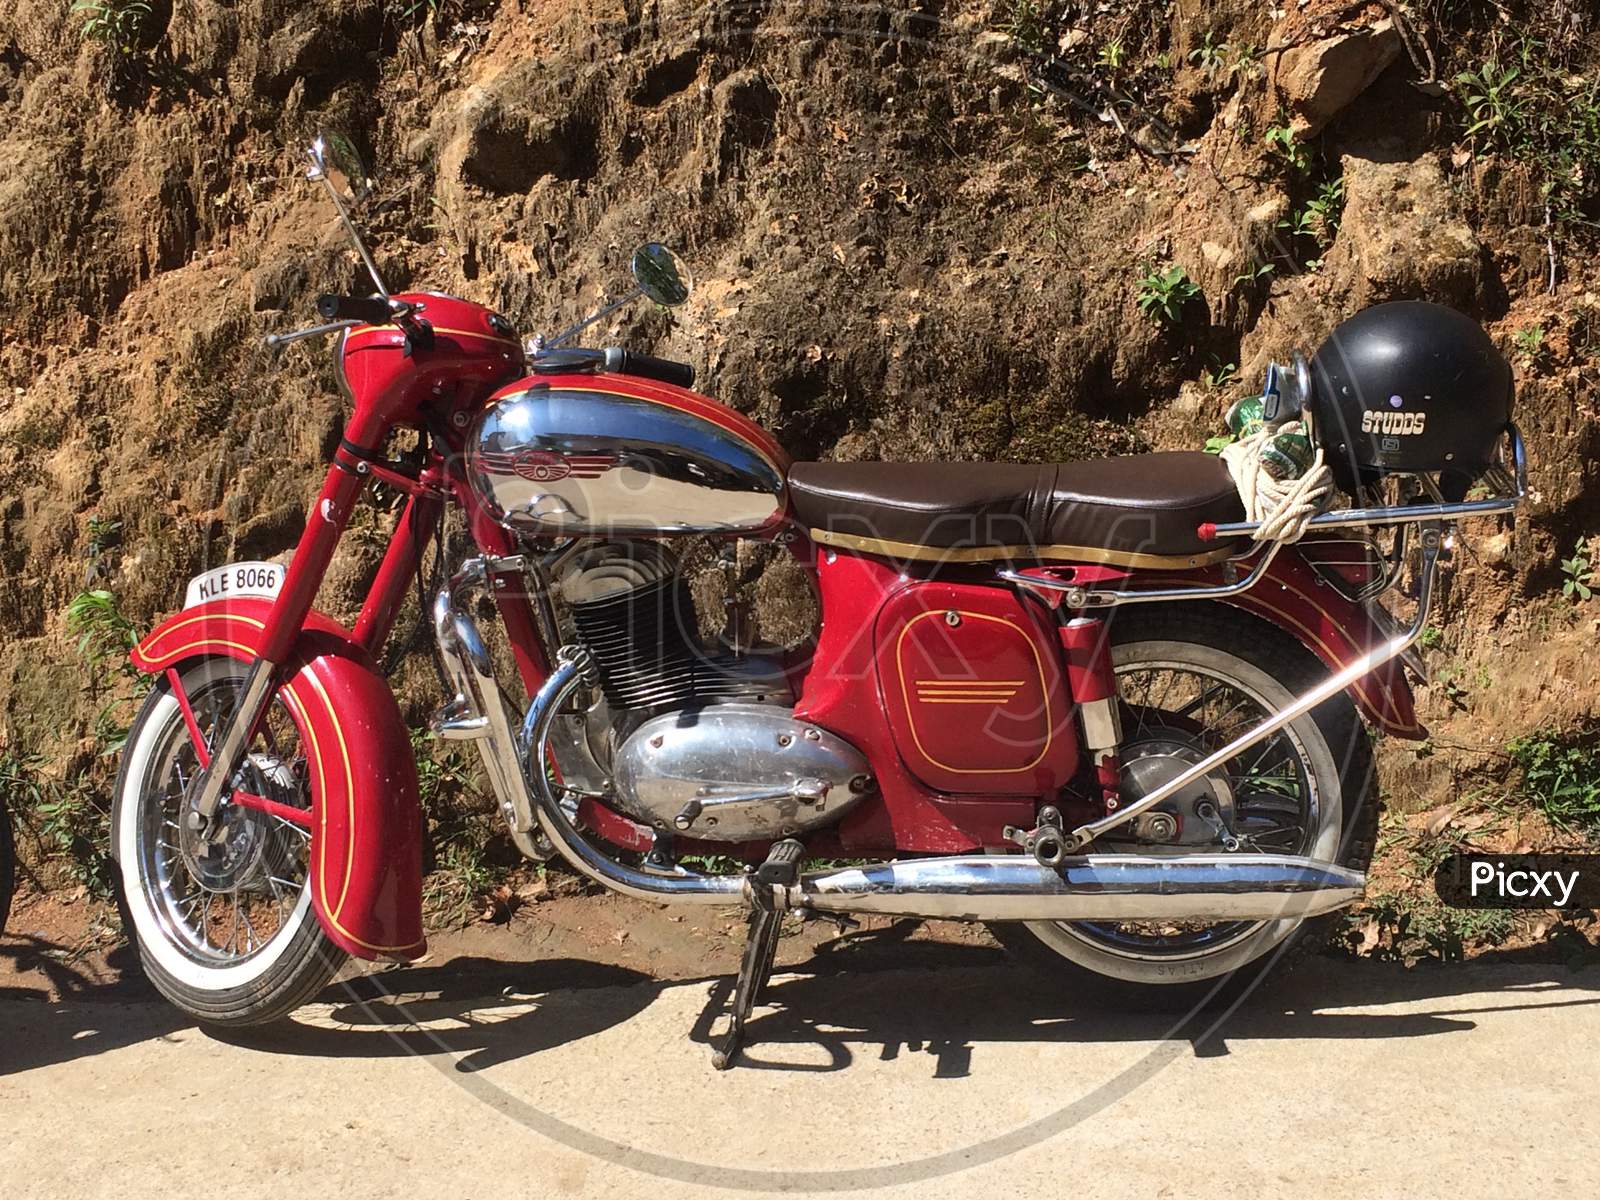 Jawa motorcycle